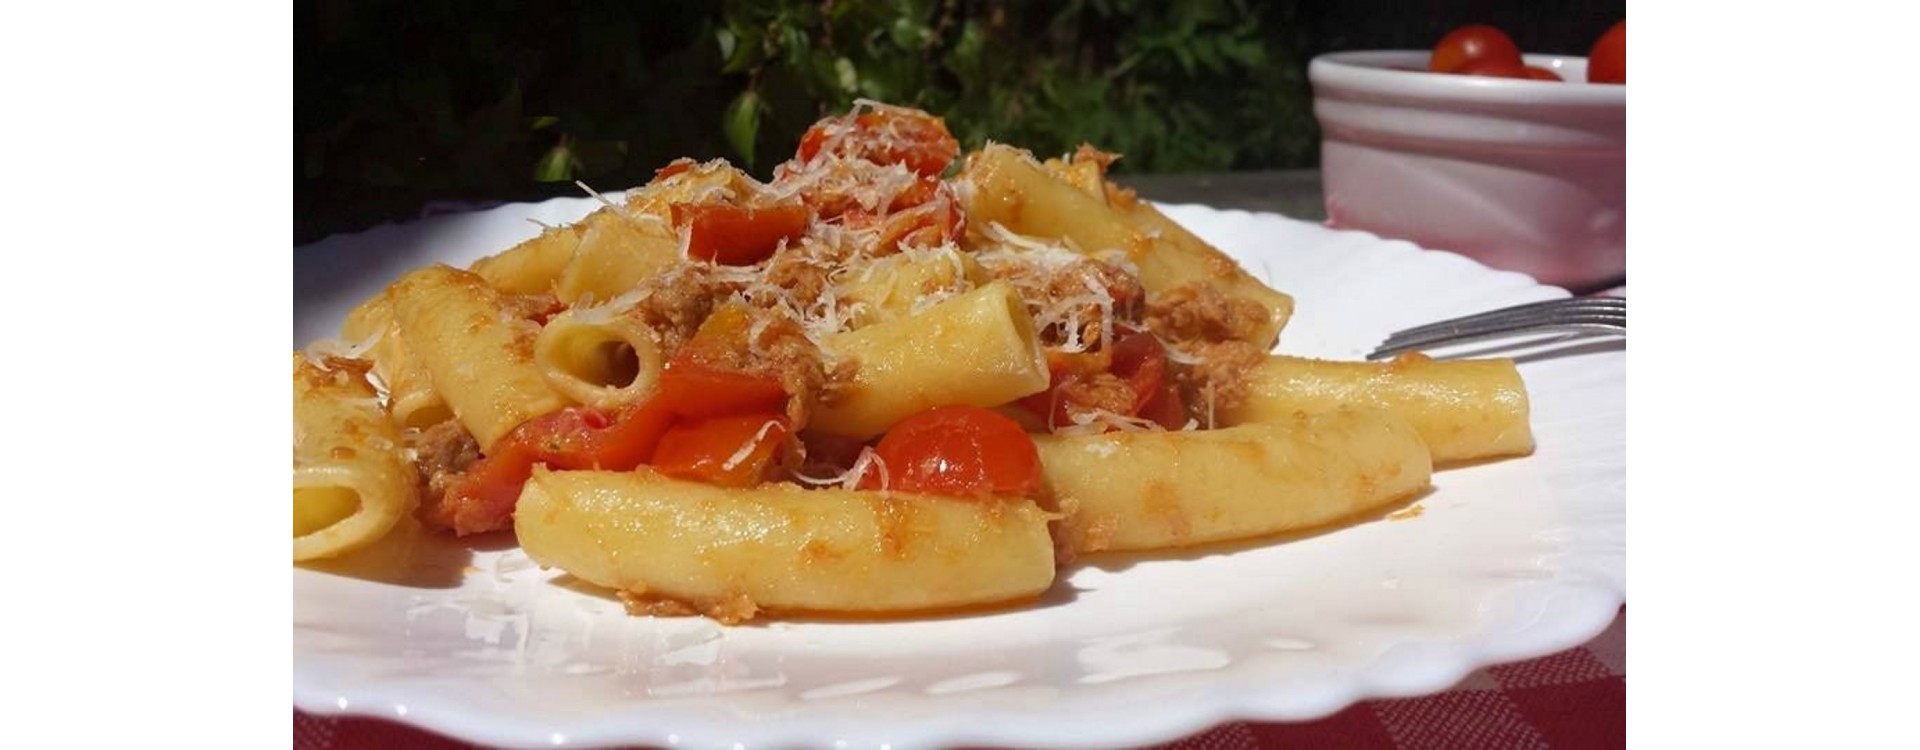 Ziti pasta with tuna and cherry tomatoes